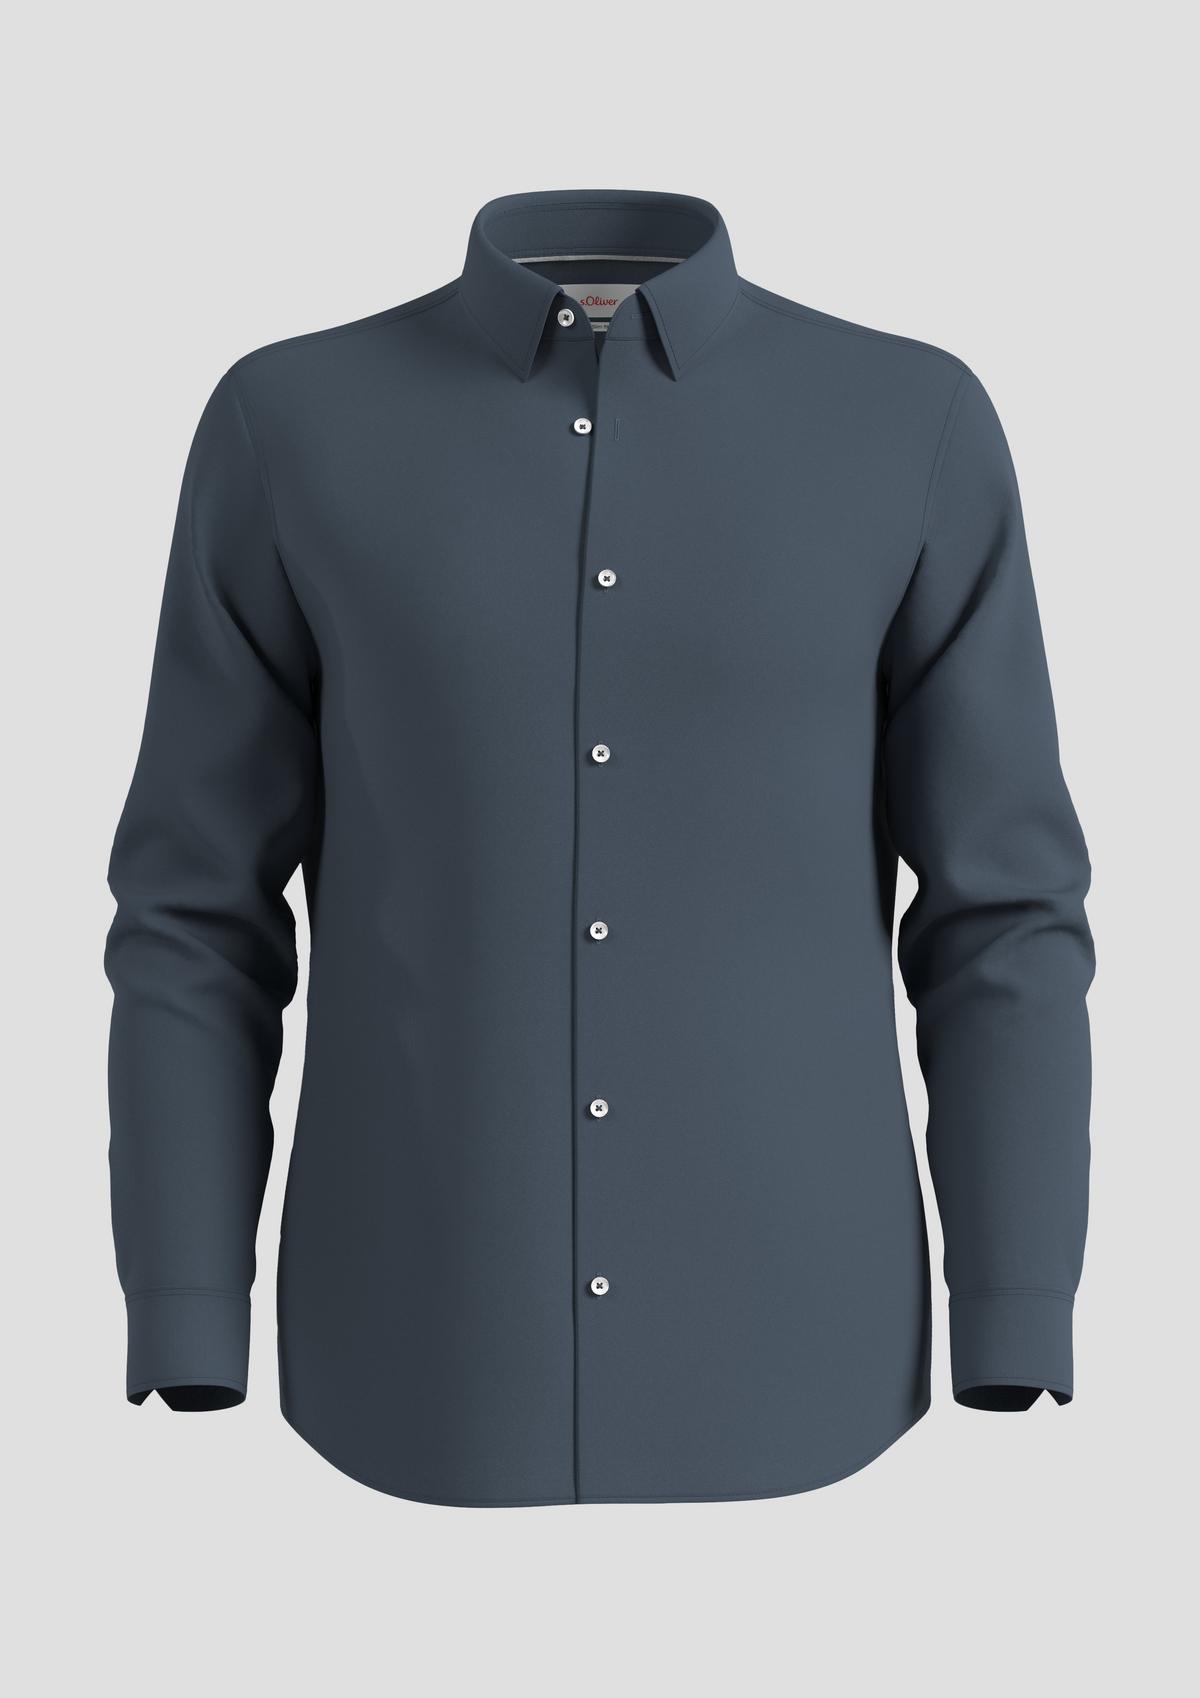 s.Oliver Slim fit: cotton blend shirt